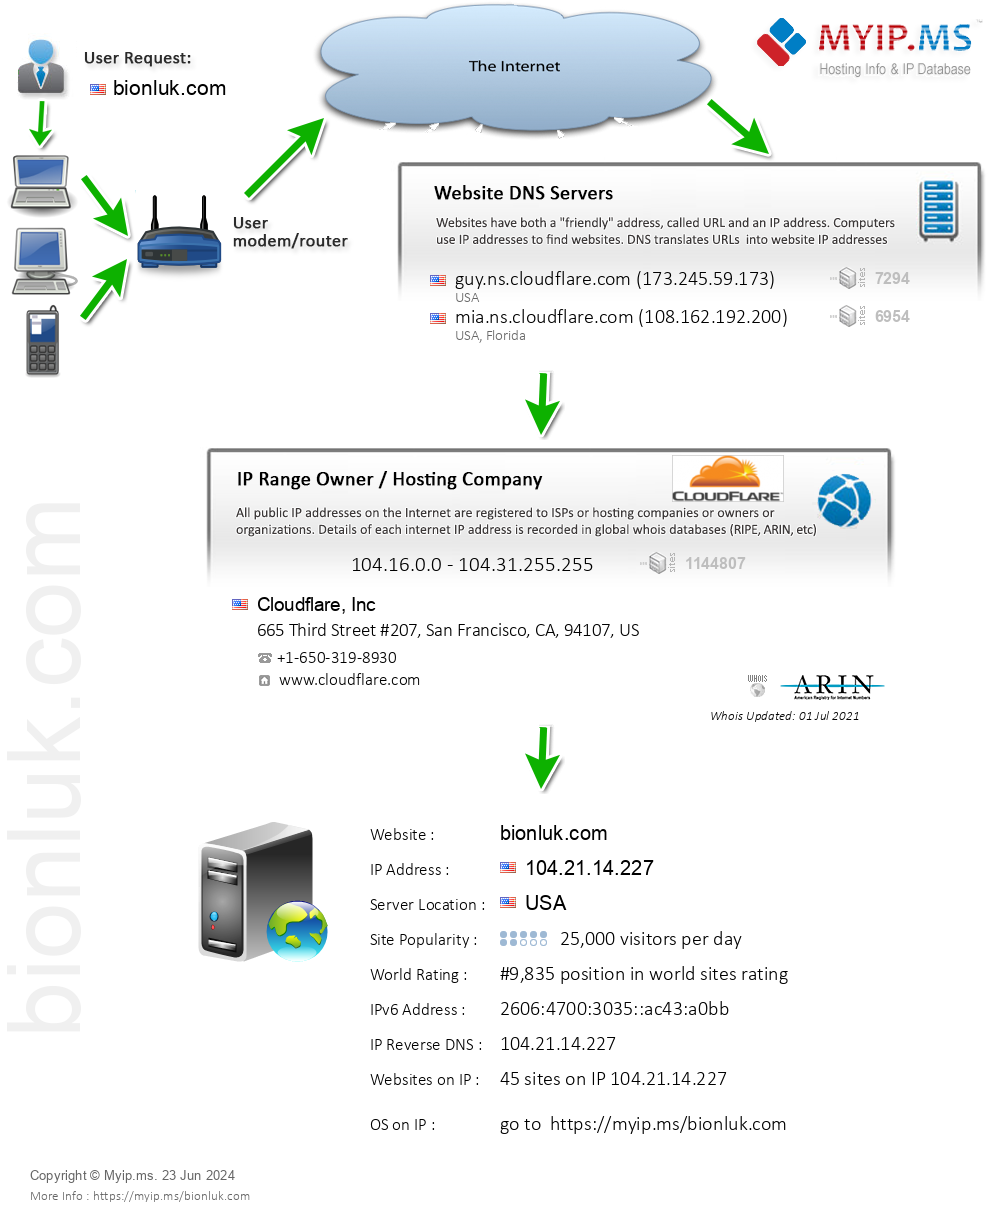 Bionluk.com - Website Hosting Visual IP Diagram